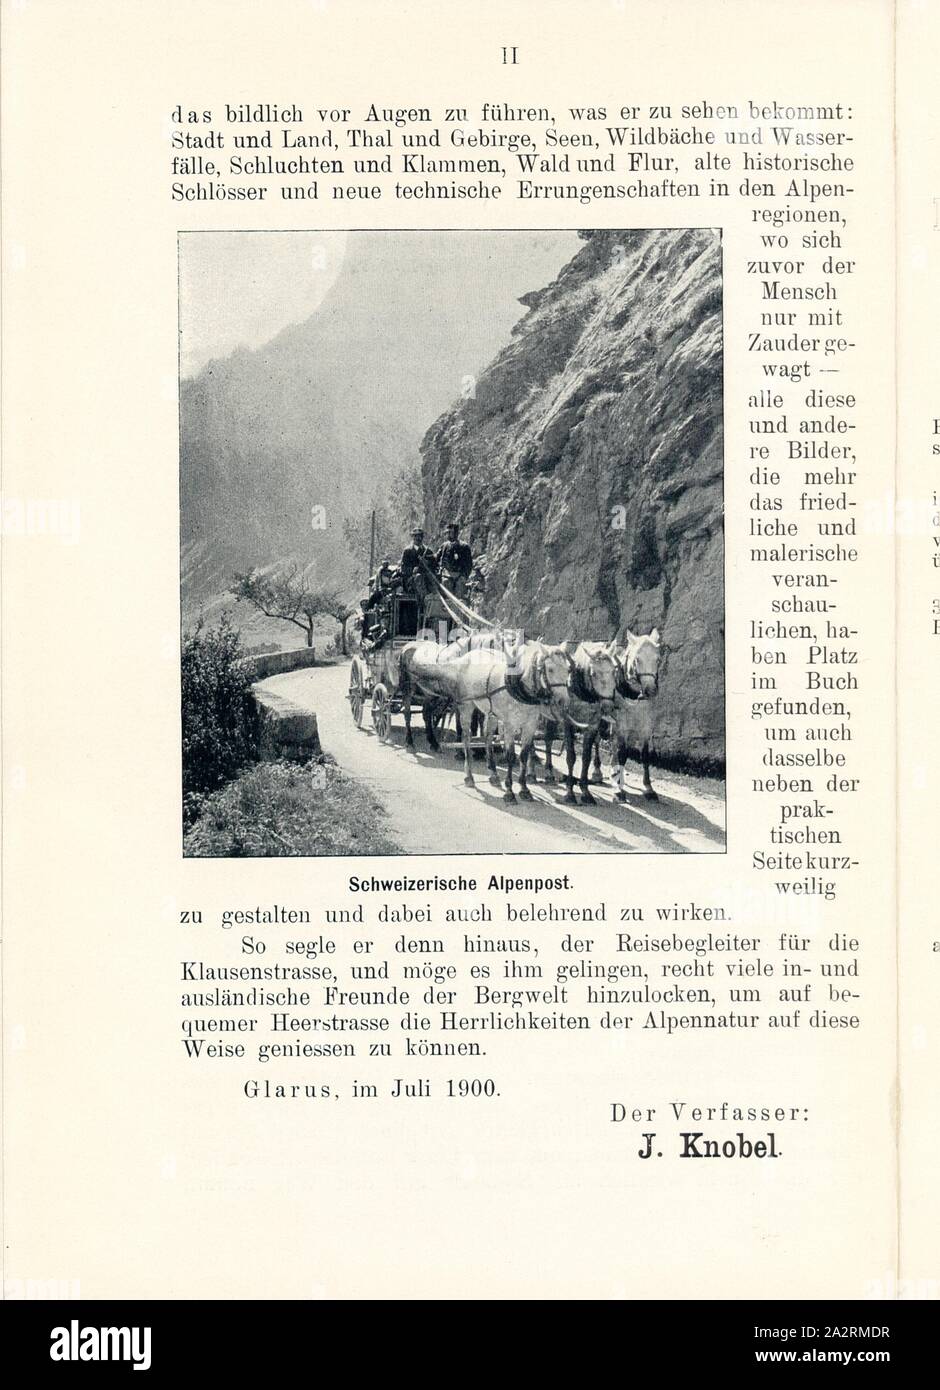 Swiss Alpine Post, Stagecoach, Fig. 1, p. II, 1900, J. Knobel: Illustrierter Reisebegleiter für die Alpenstrasse des Klausen und ihre Zufahrtslinien. Glarus: Buchdruckerei J. Spälti, 1900 Stock Photo